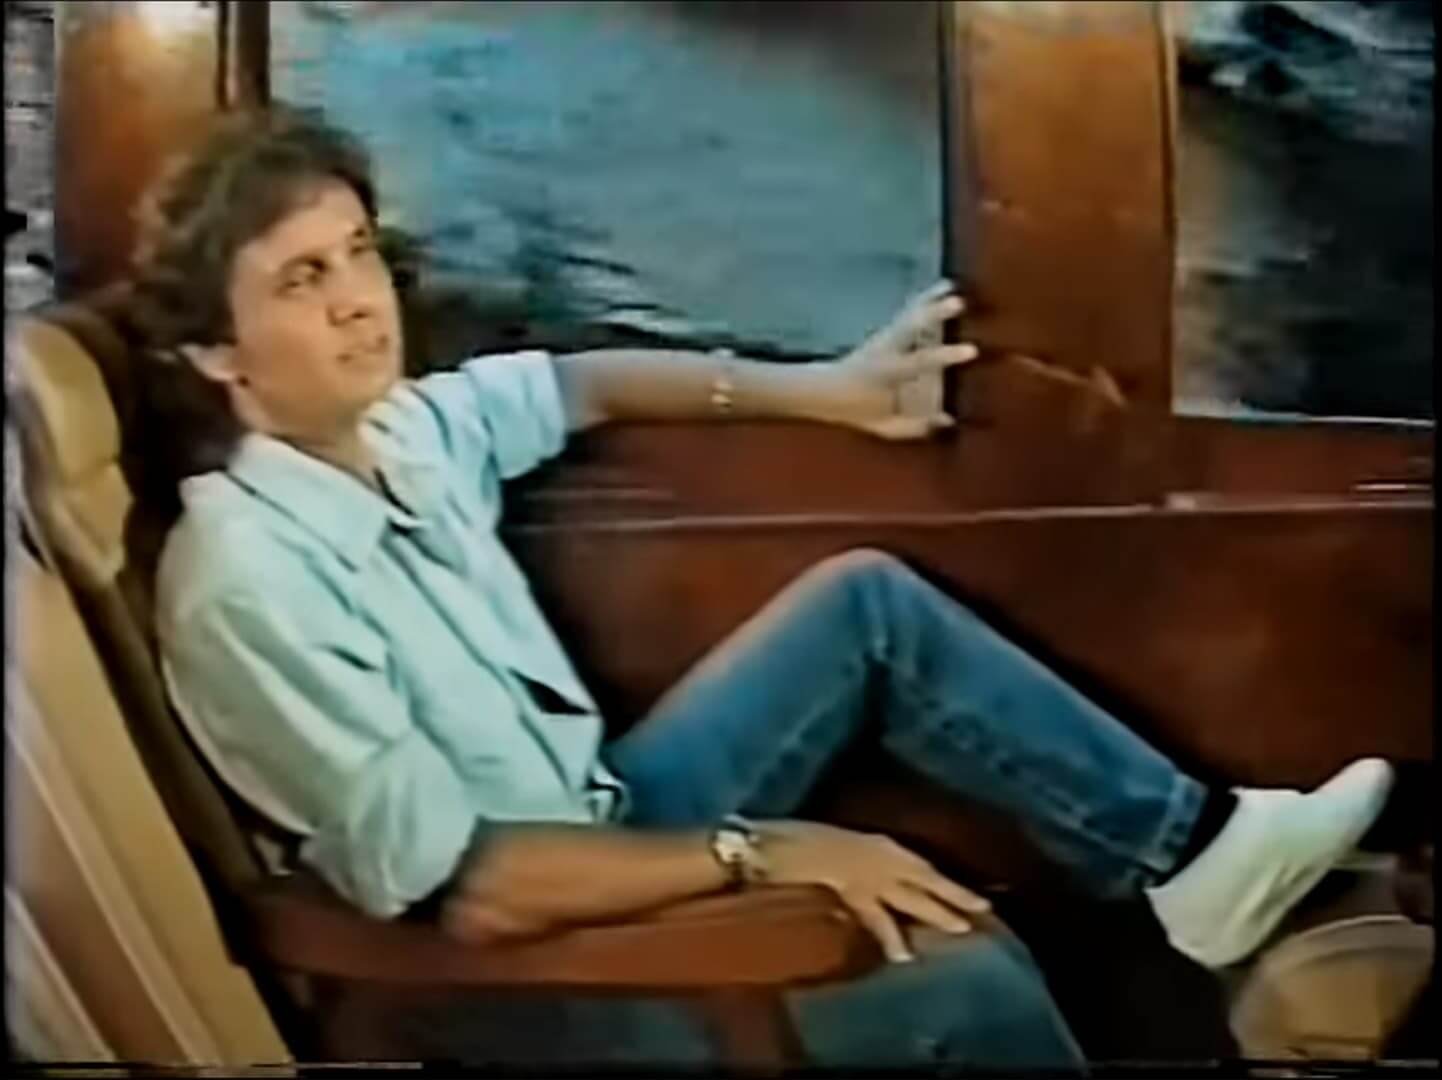 A imagem mostra o cantor Roberto Carlos sentado no trem durante as gravações do especial de fim de ano da TV Globo em 1986.